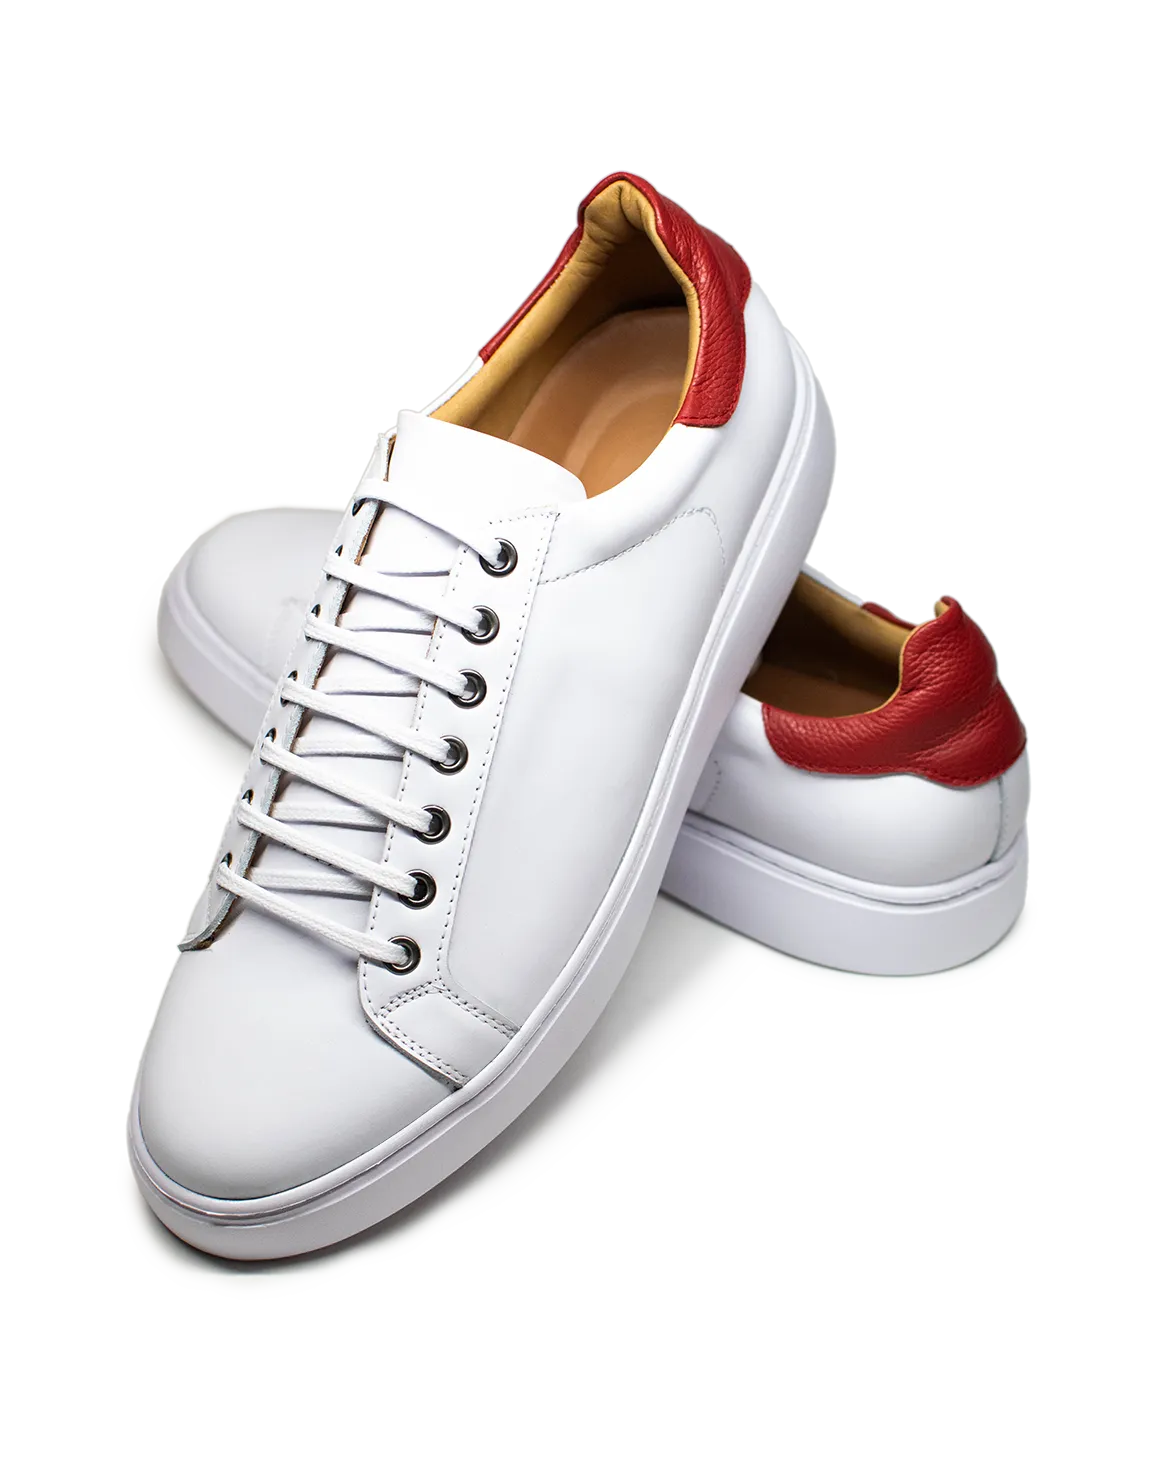 Sneakers (Blancas con talón rojo)